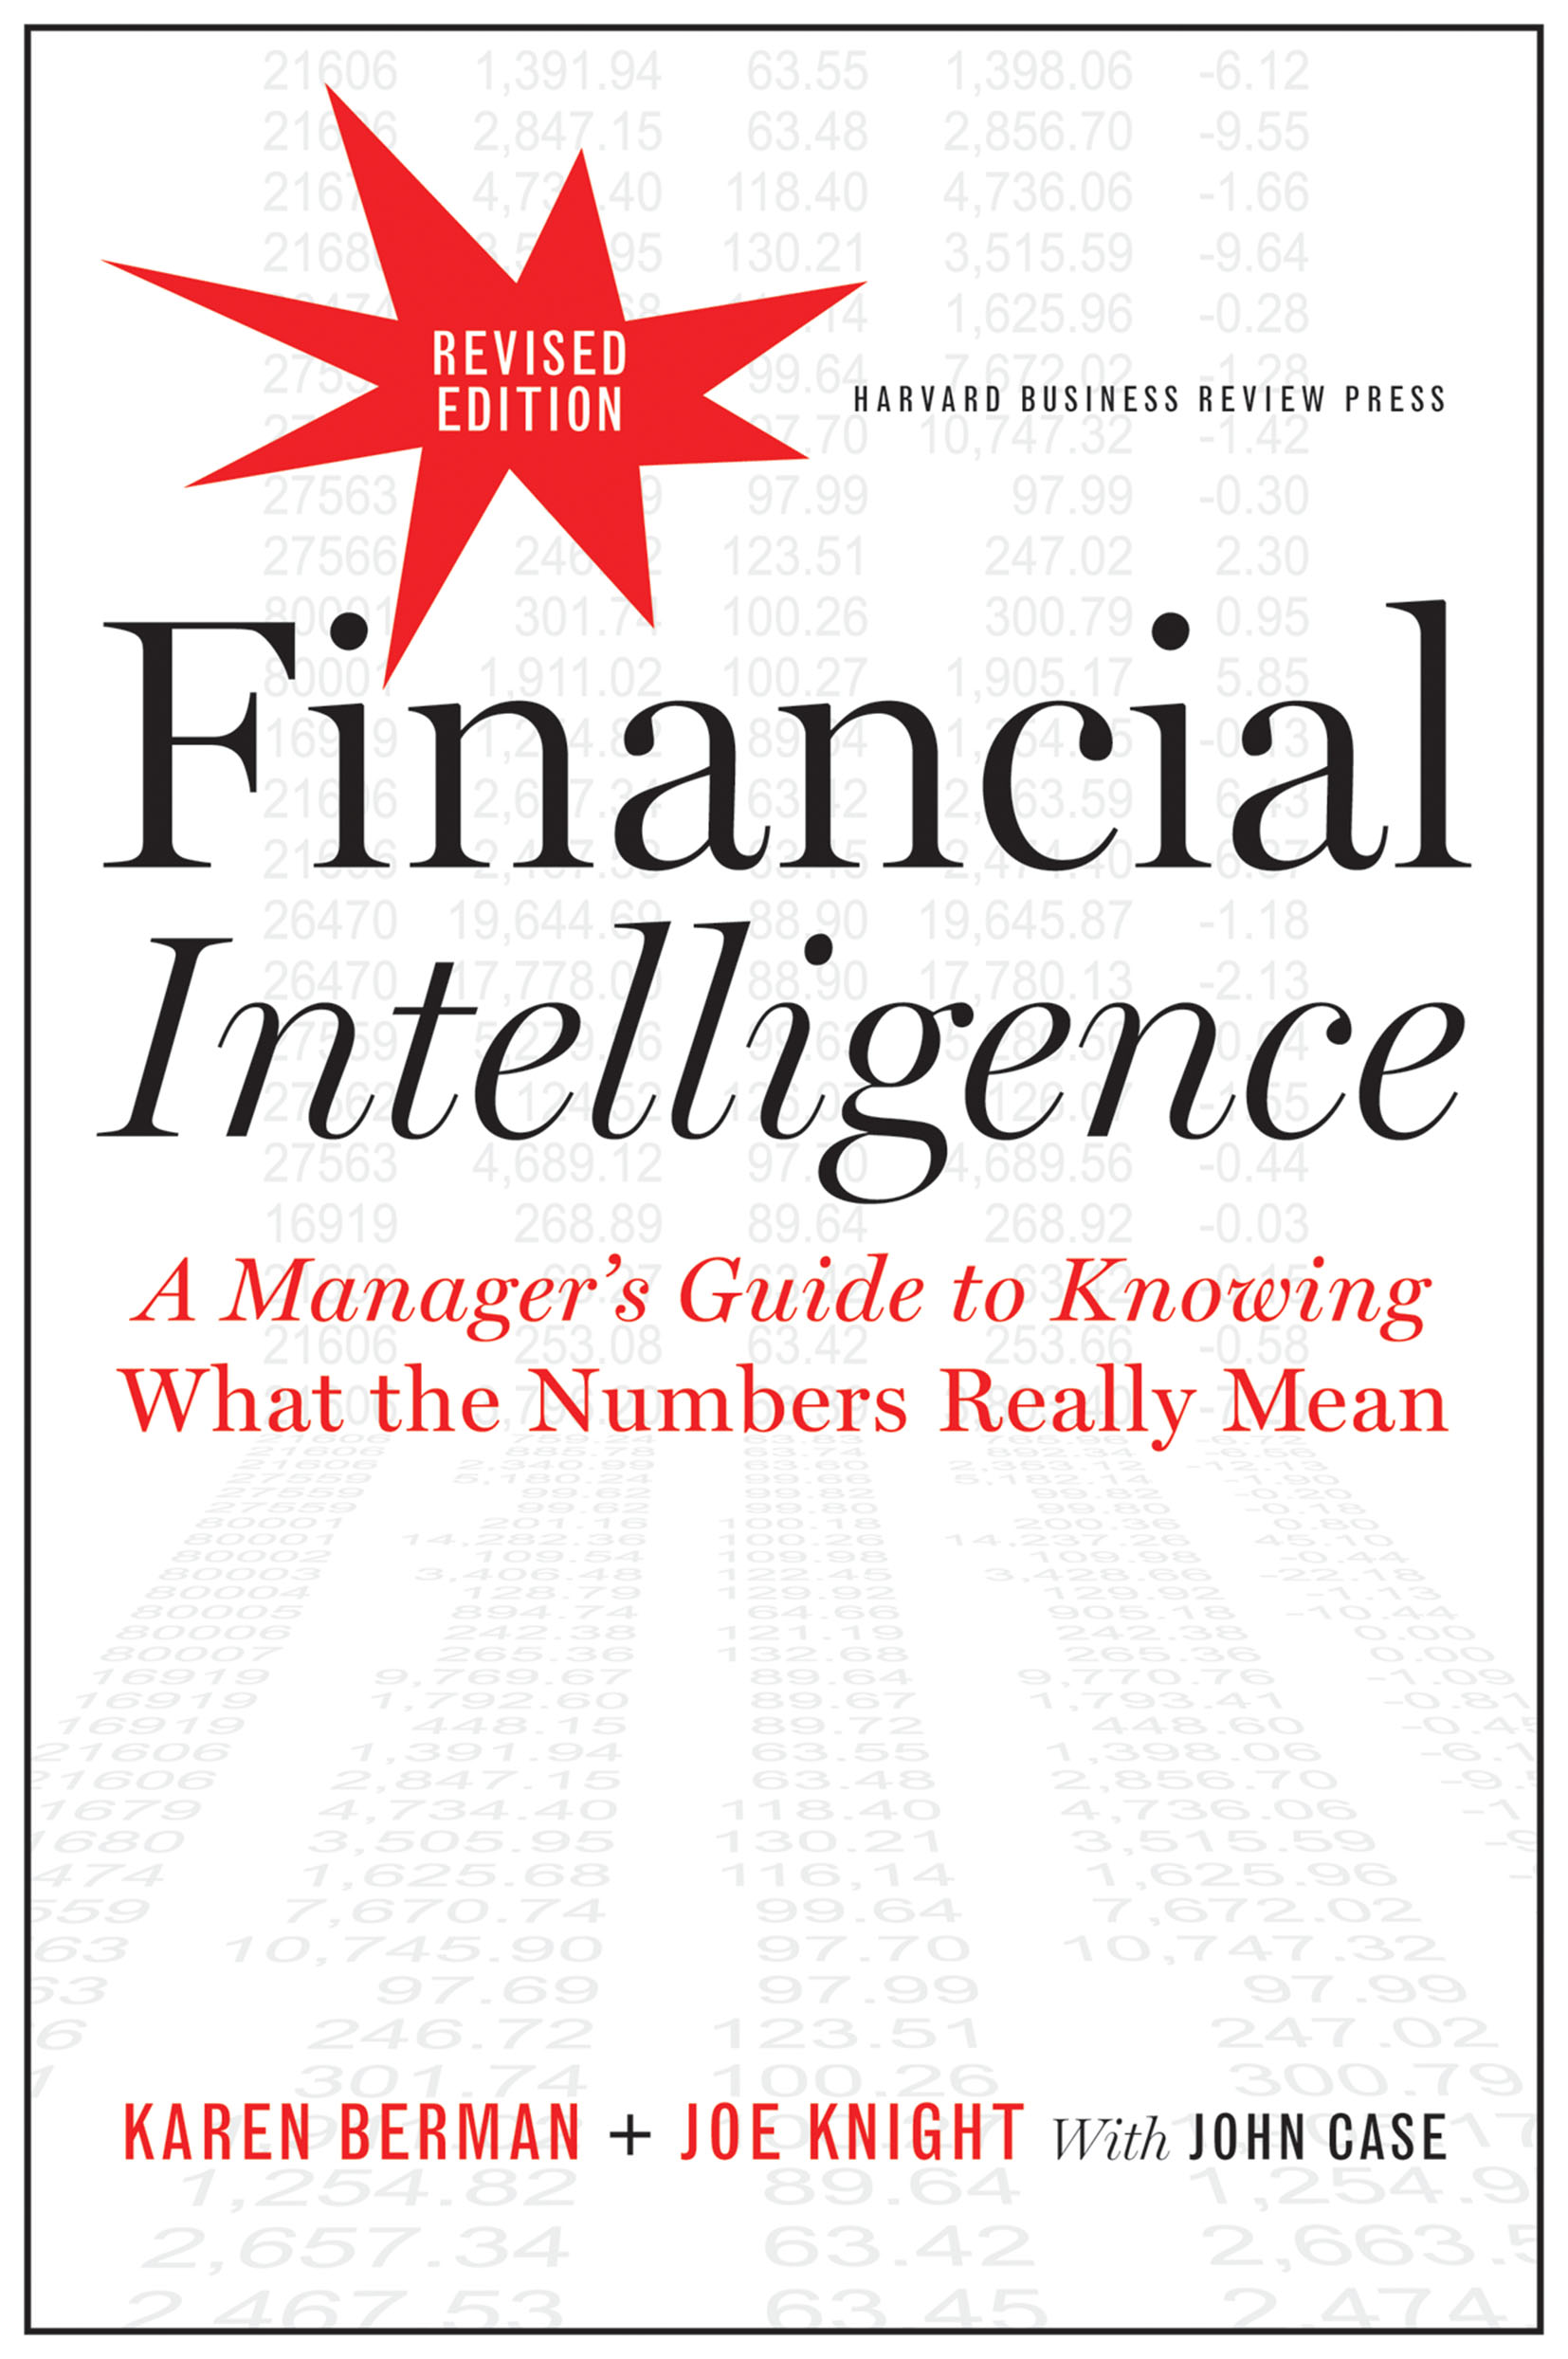 phd in financial intelligence